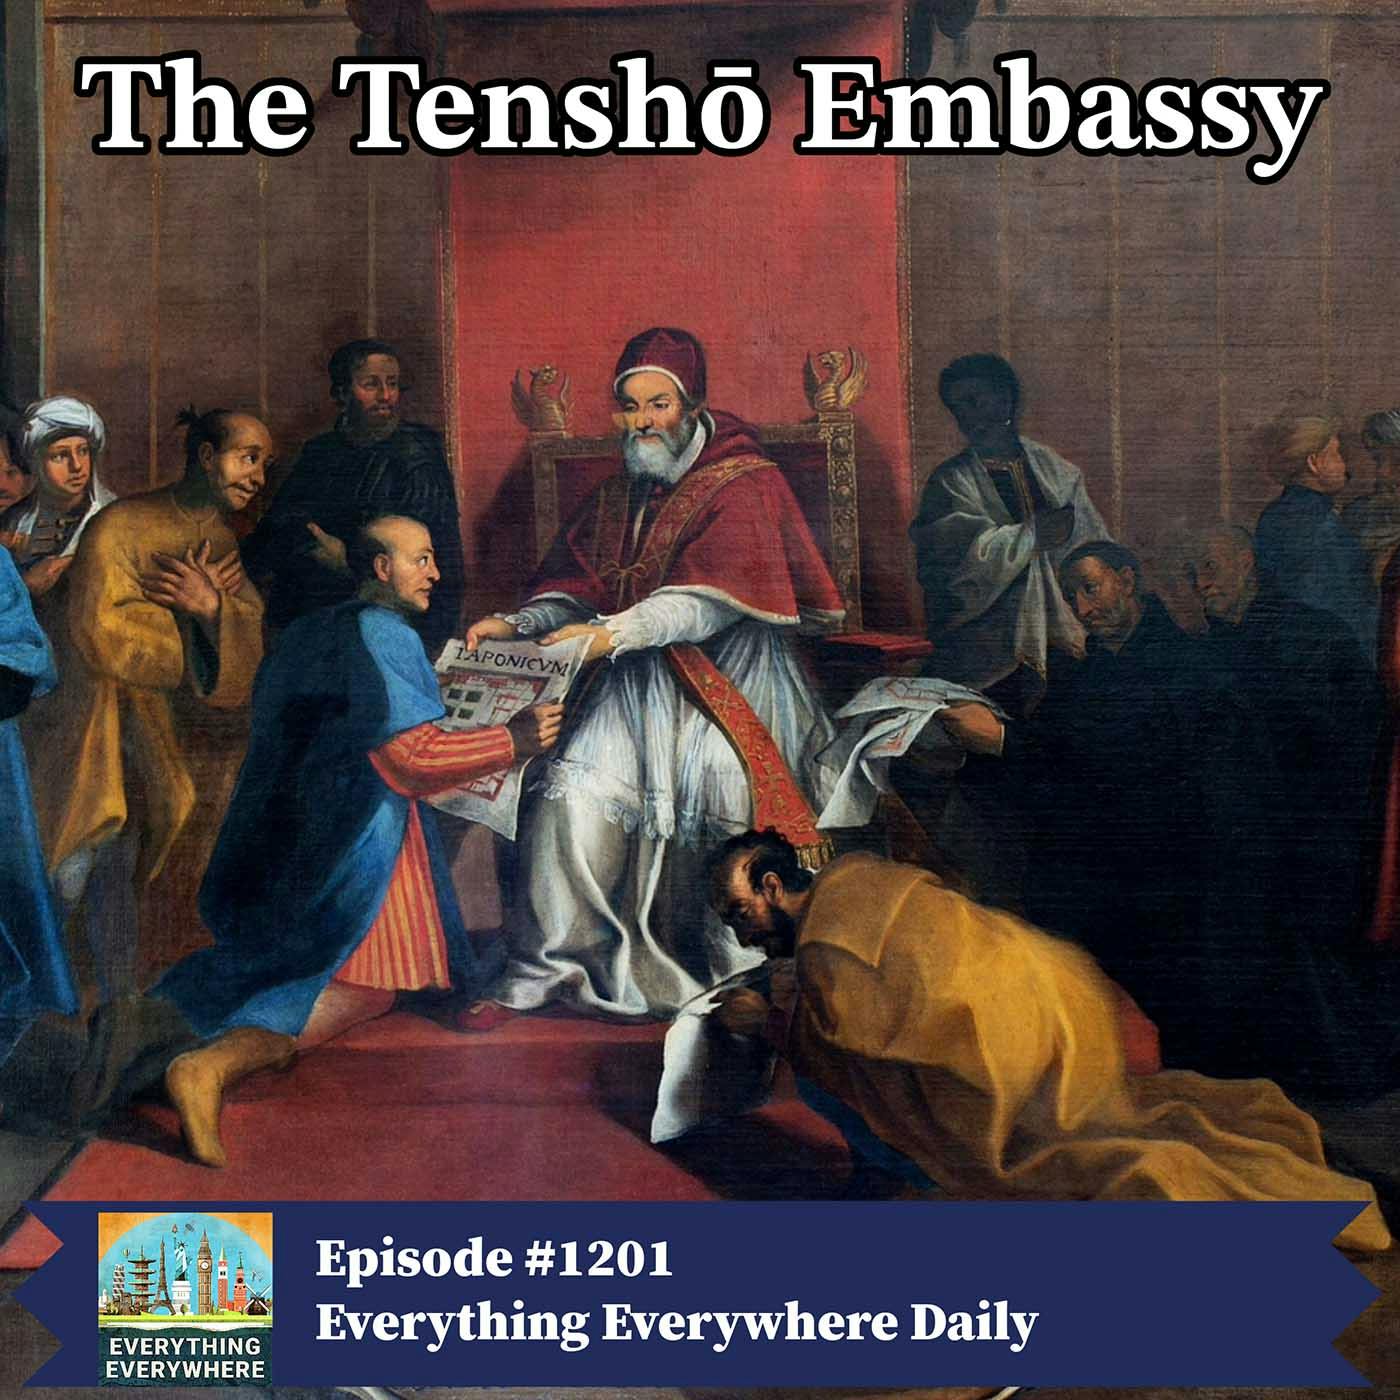 The Tenshō embassy